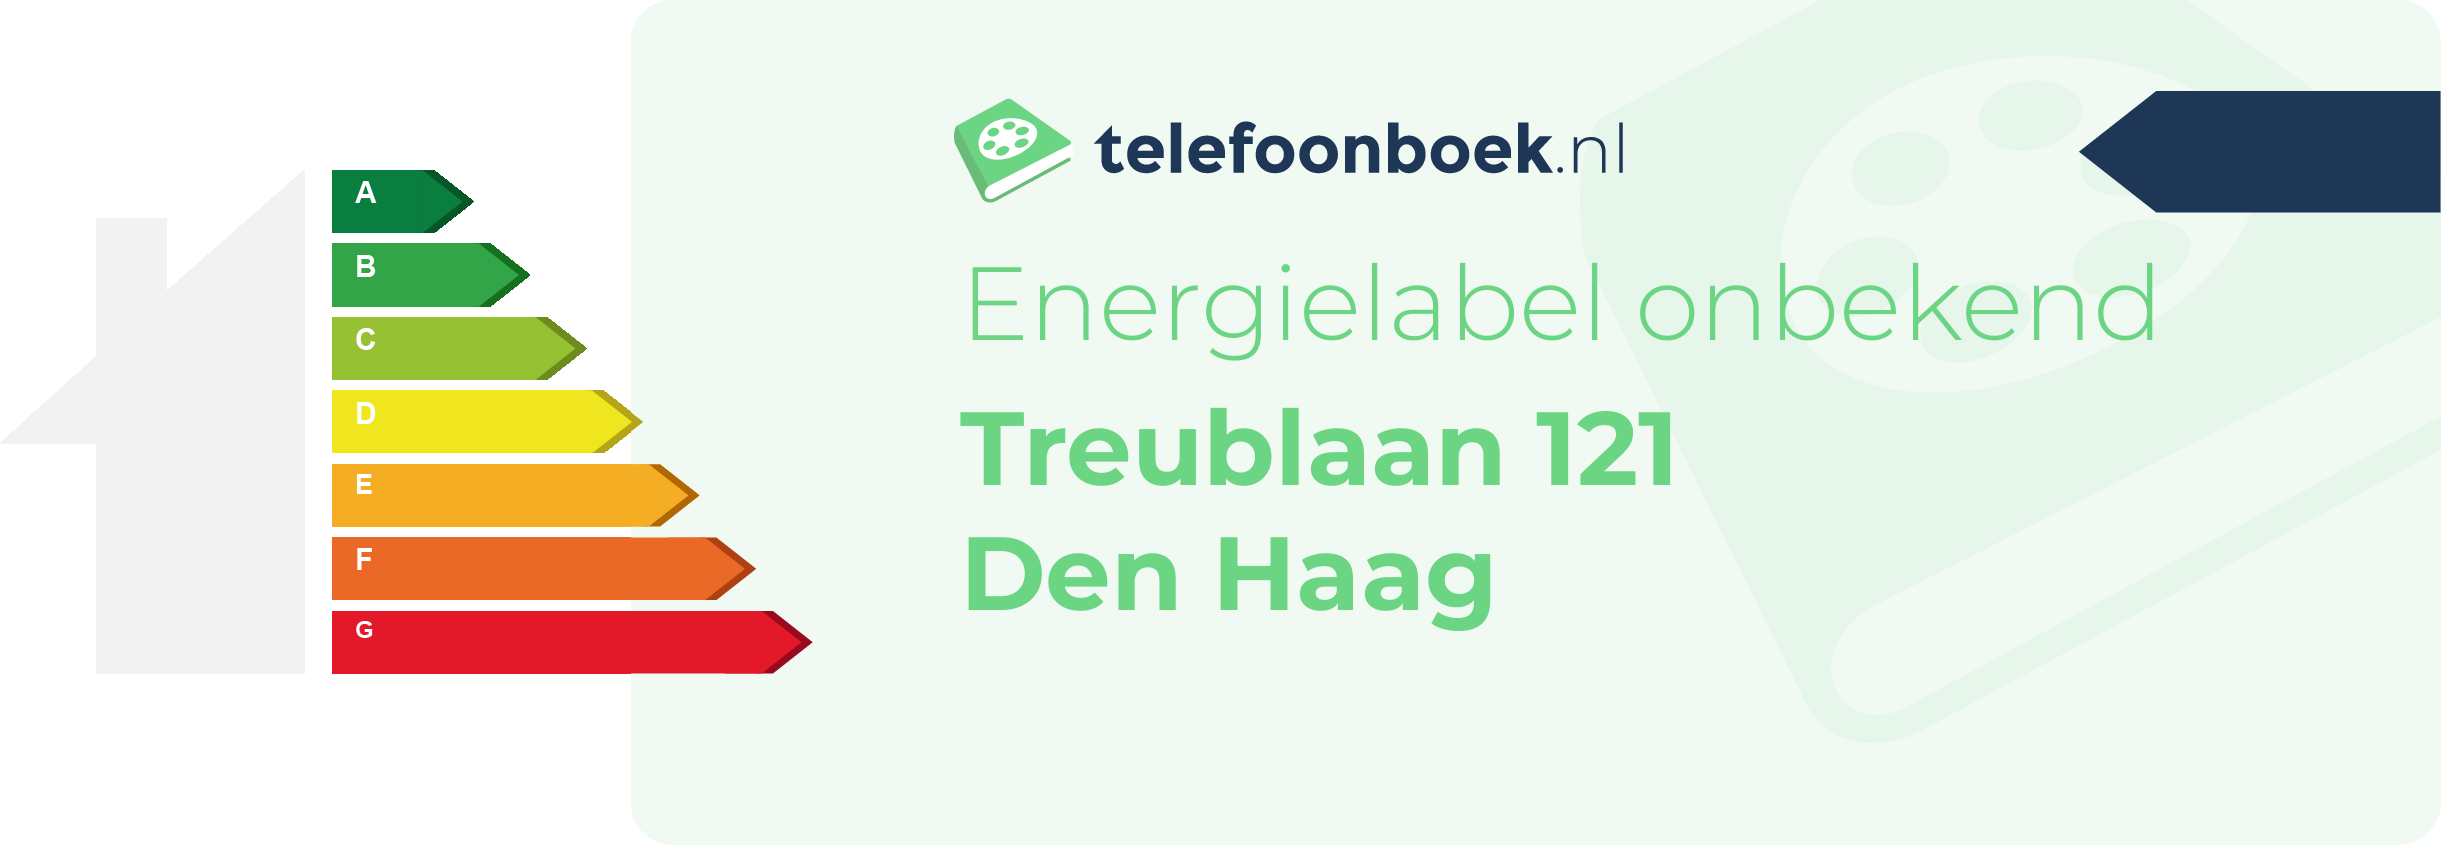 Energielabel Treublaan 121 Den Haag